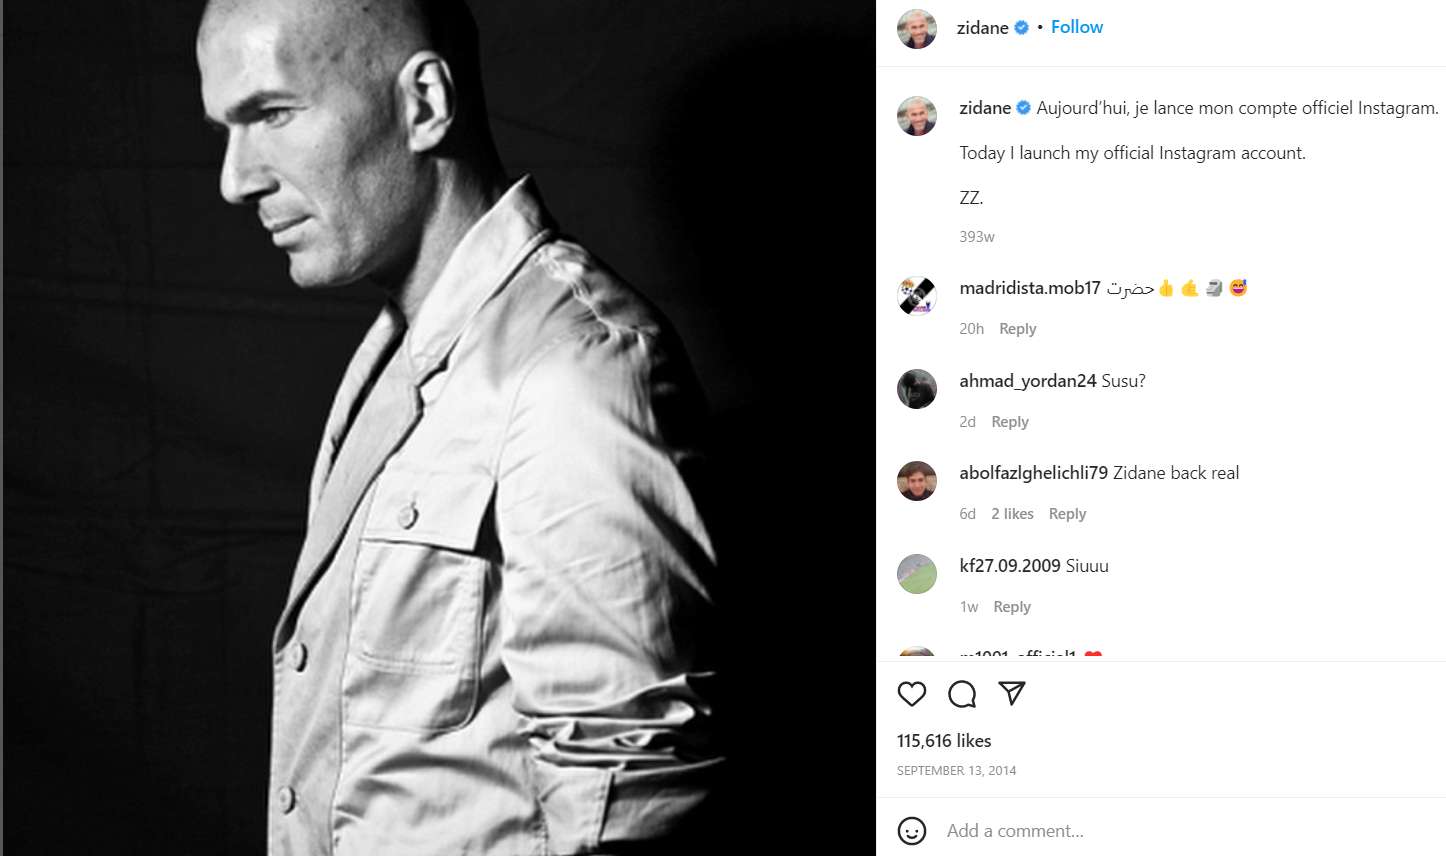 Zinedine Zidane's first post on Instagram